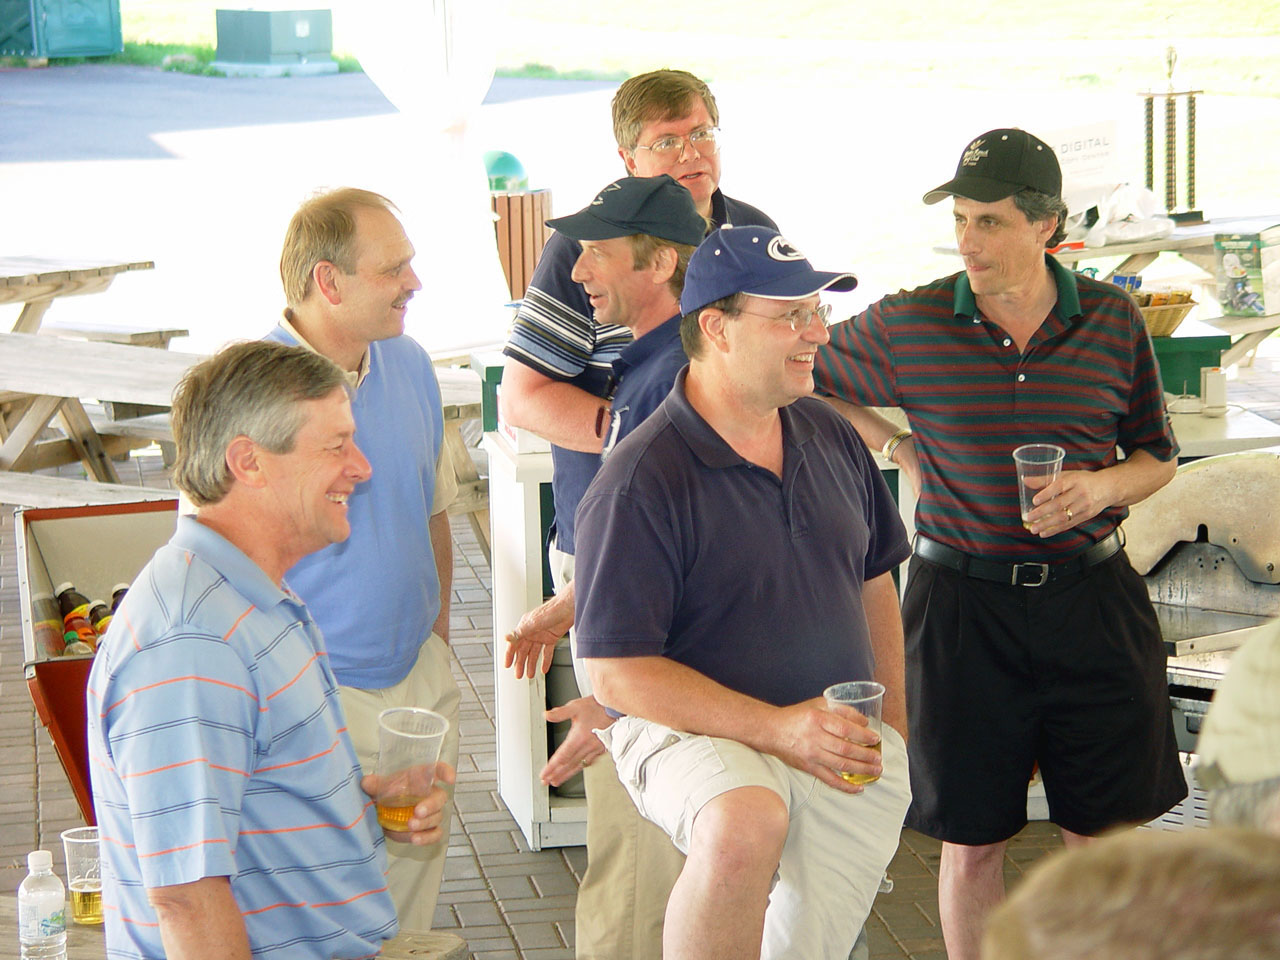  L to R: TK, TK, TK TK, Bob Mooney and TK
2007 Golf Open
photo courtesy of Ed Beidel '76 